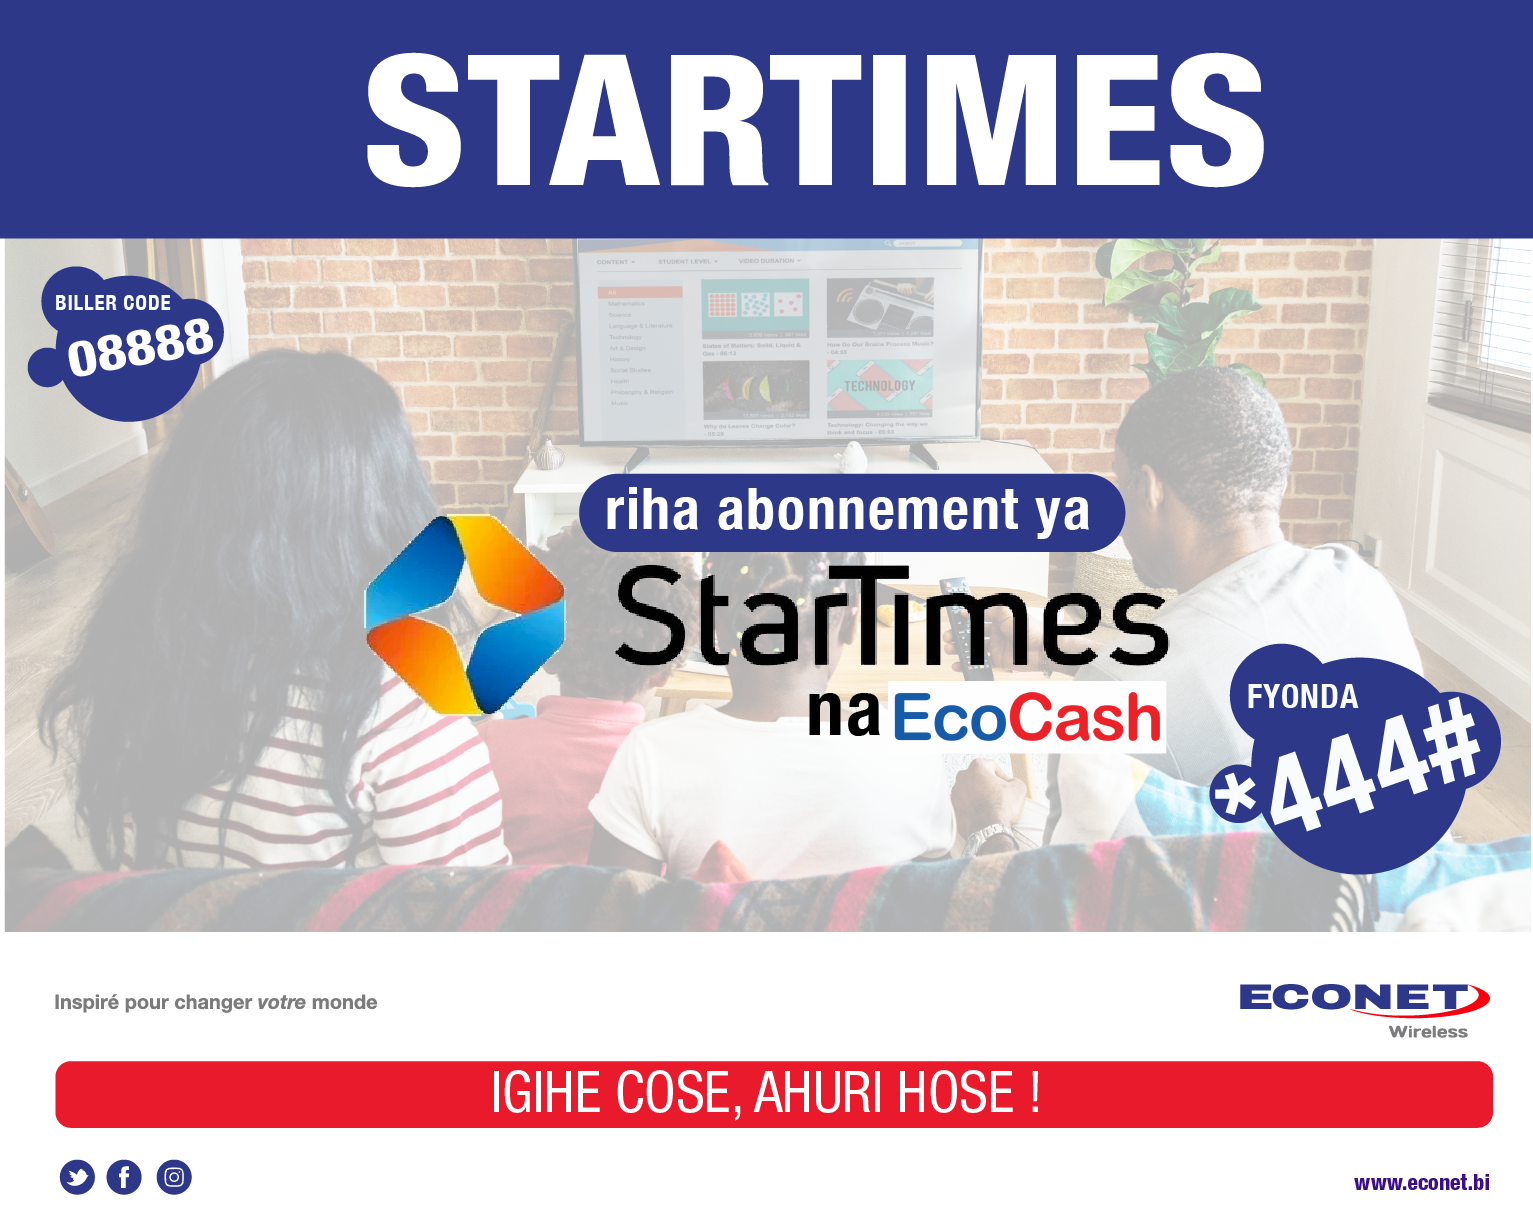 StarTimes